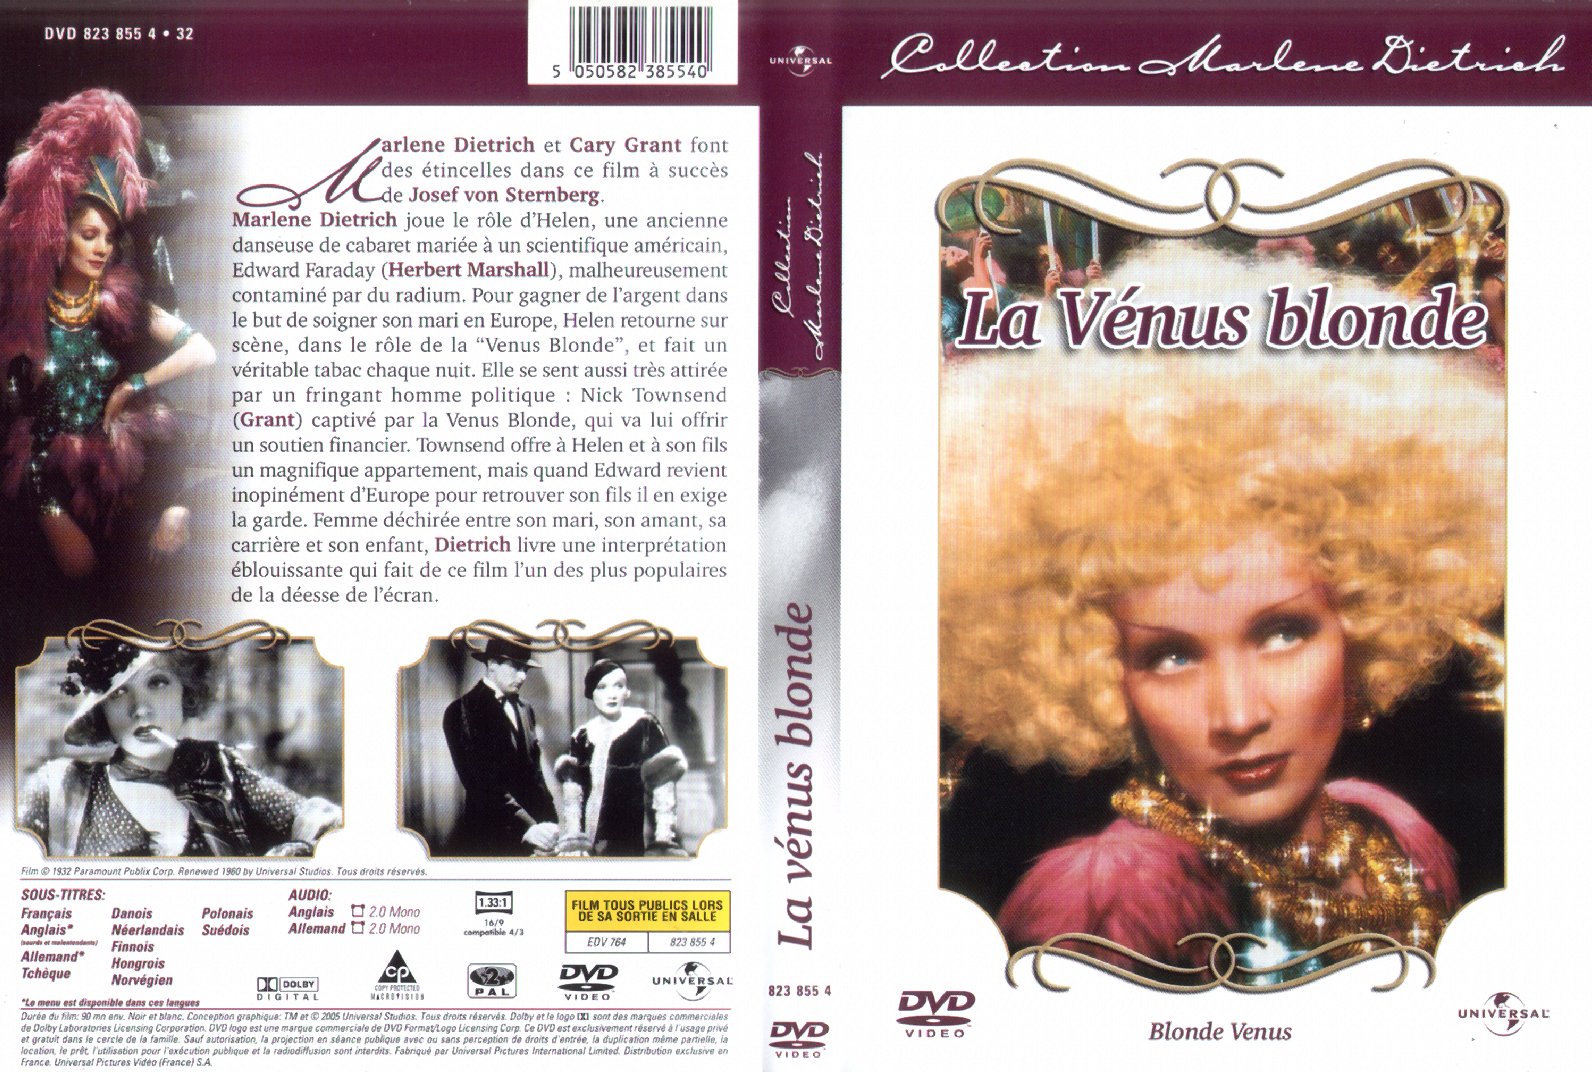 Jaquette DVD La vnus blonde